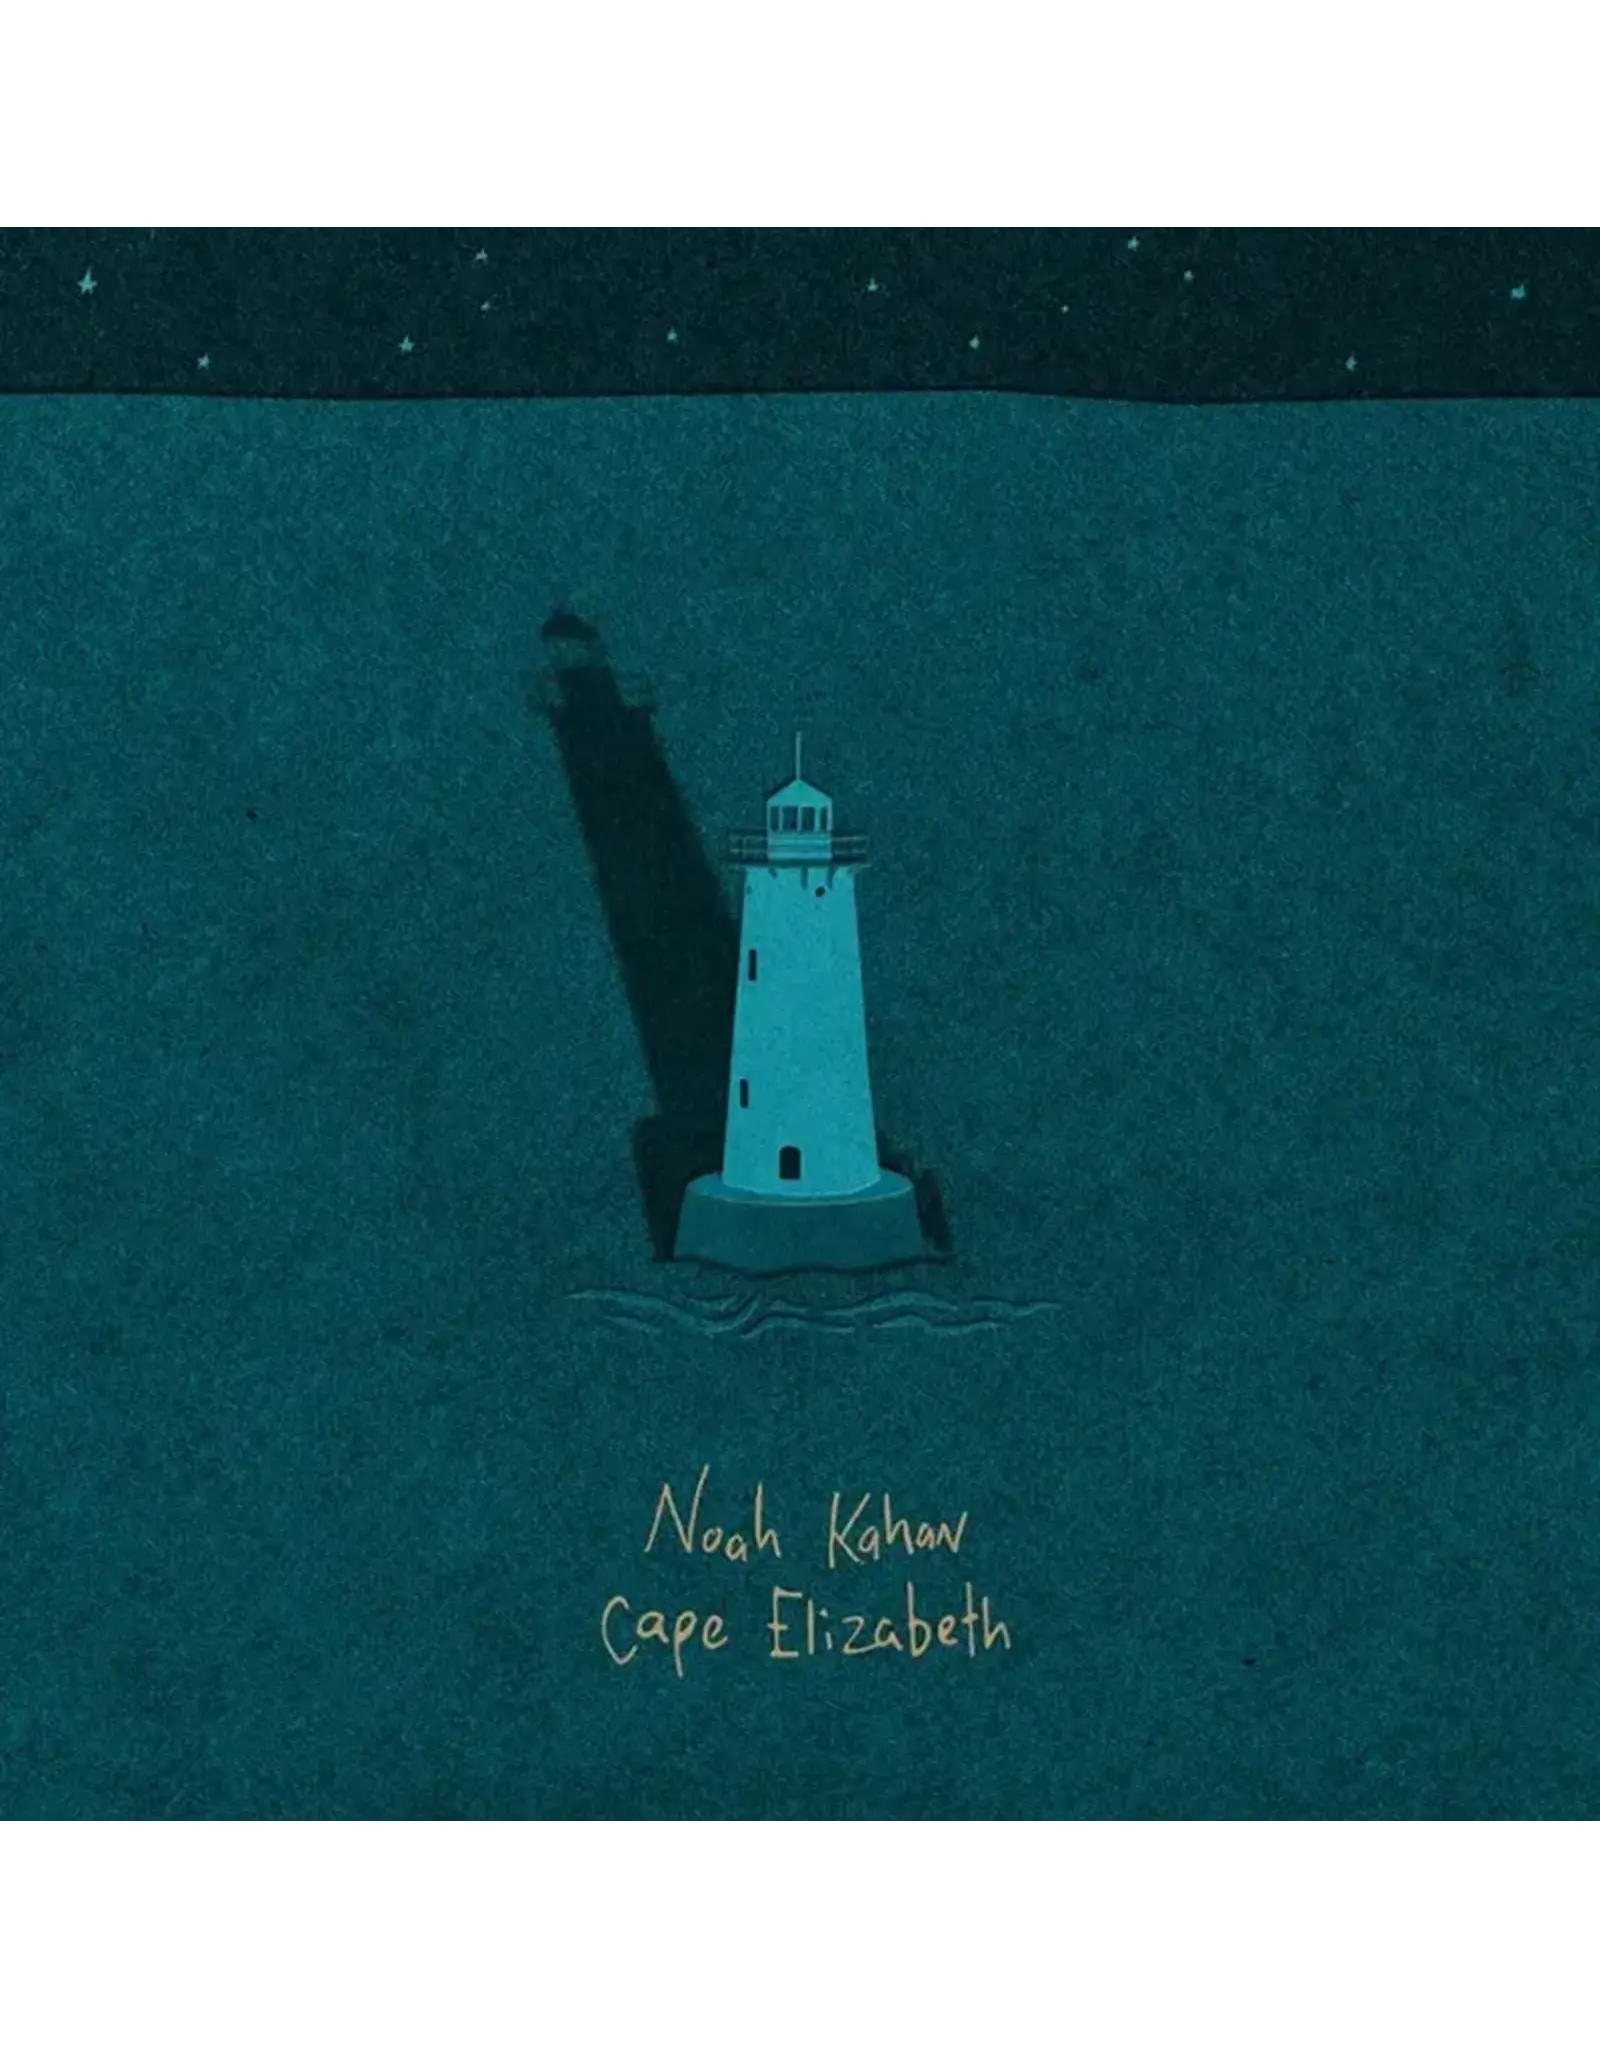 Noah Kahan - Cape Elizabeth EP (Aqua Vinyl)